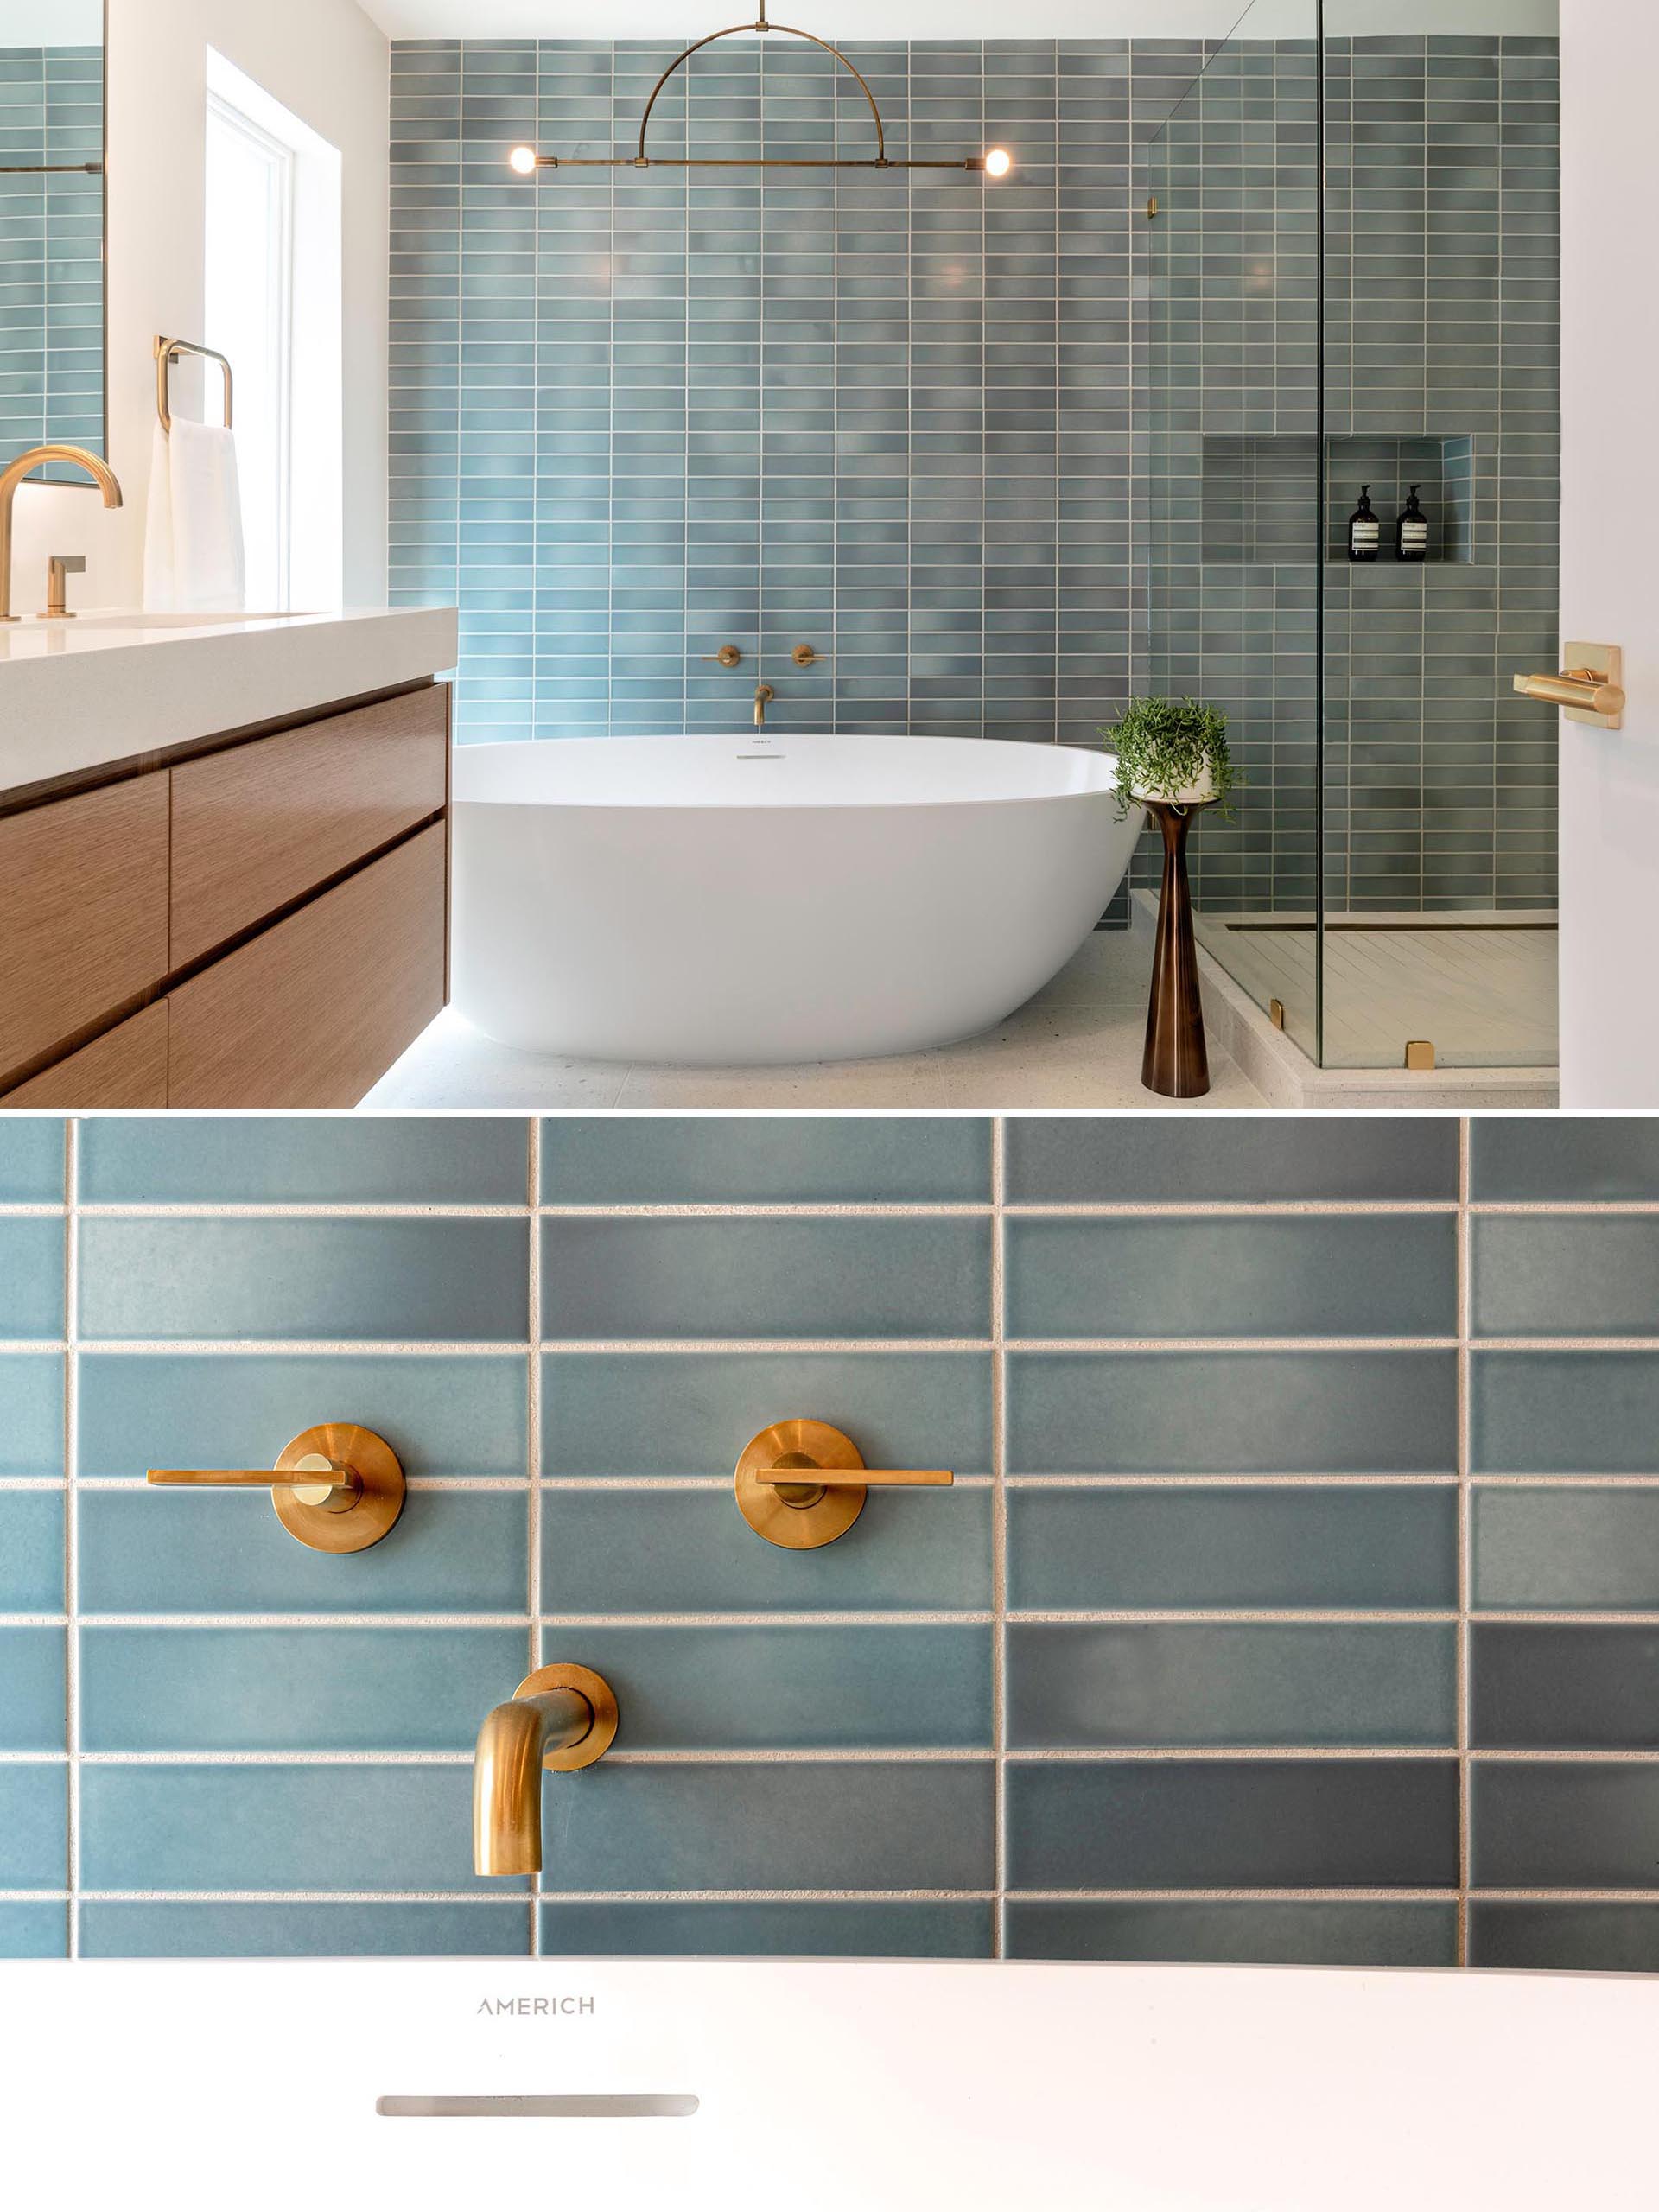 Это современная ванная комната с синей прямоугольной настенной плиткой, минималистичным светильником, отдельно стоящей белой ванной и латунными светильниками.